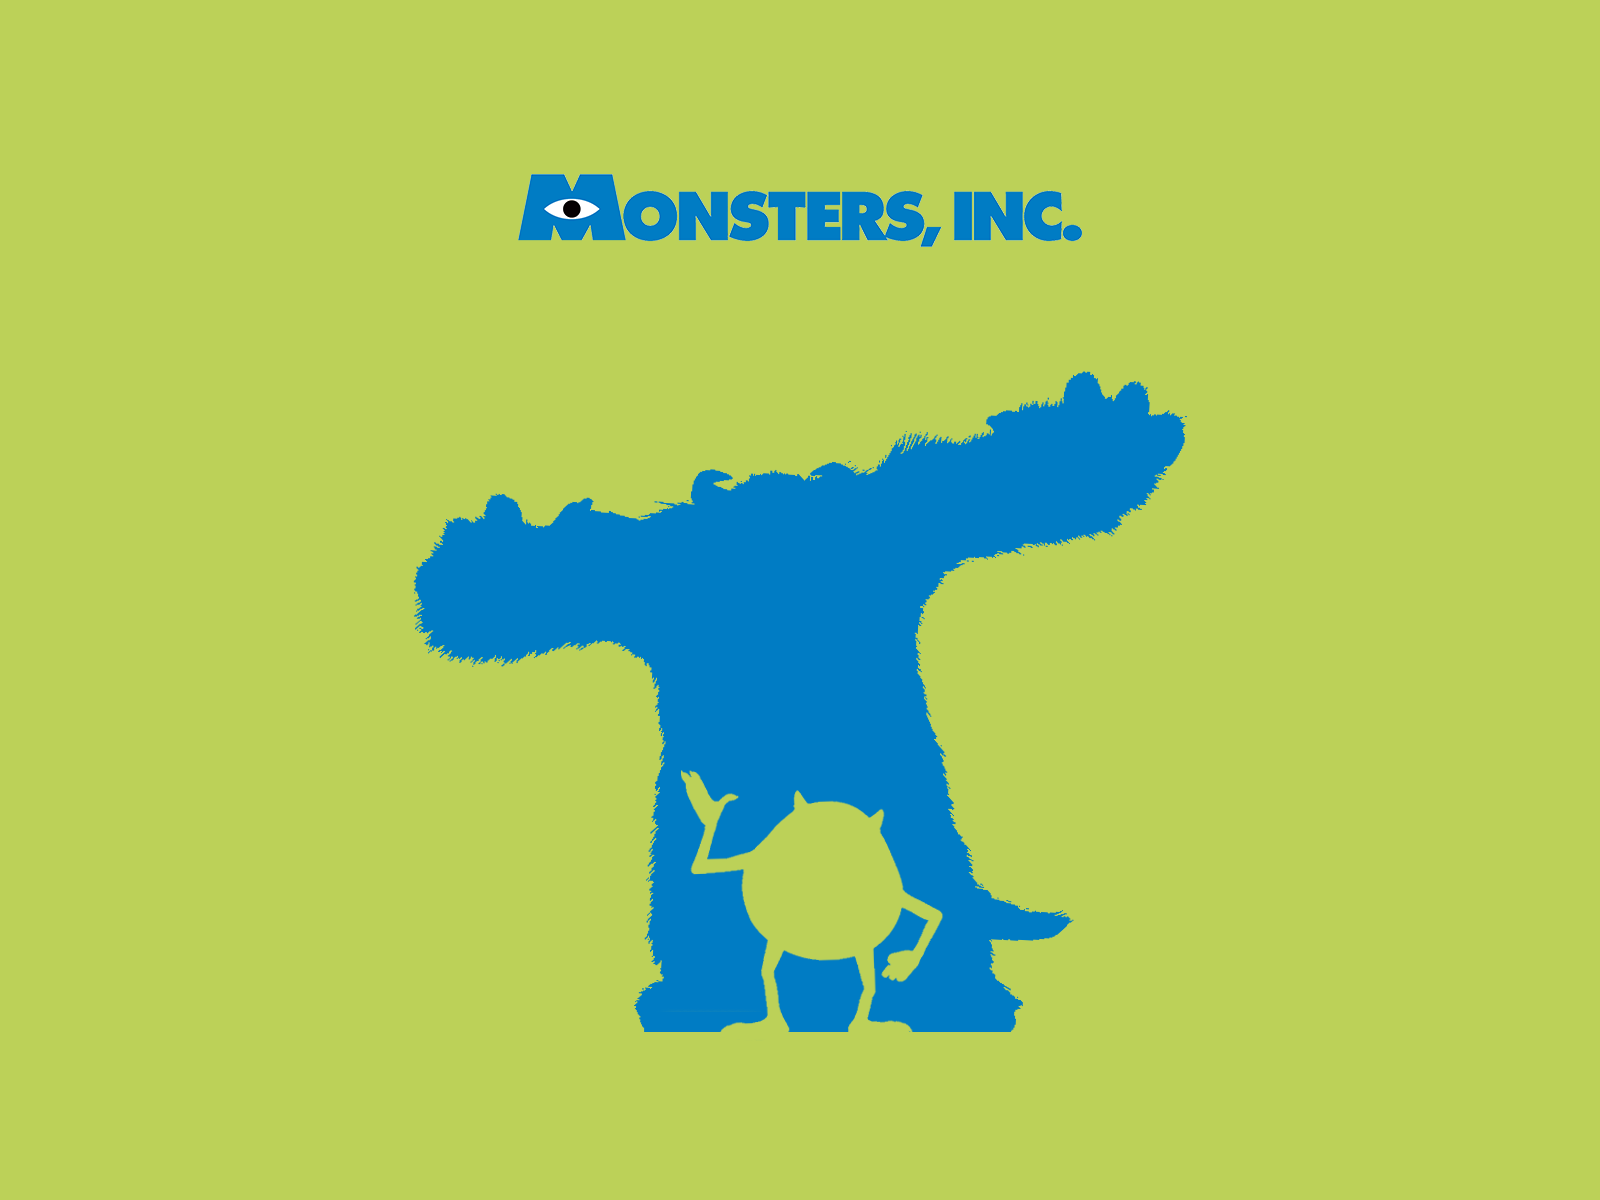 Monsters, Inc. Computer Wallpapers, Desktop Backgrounds